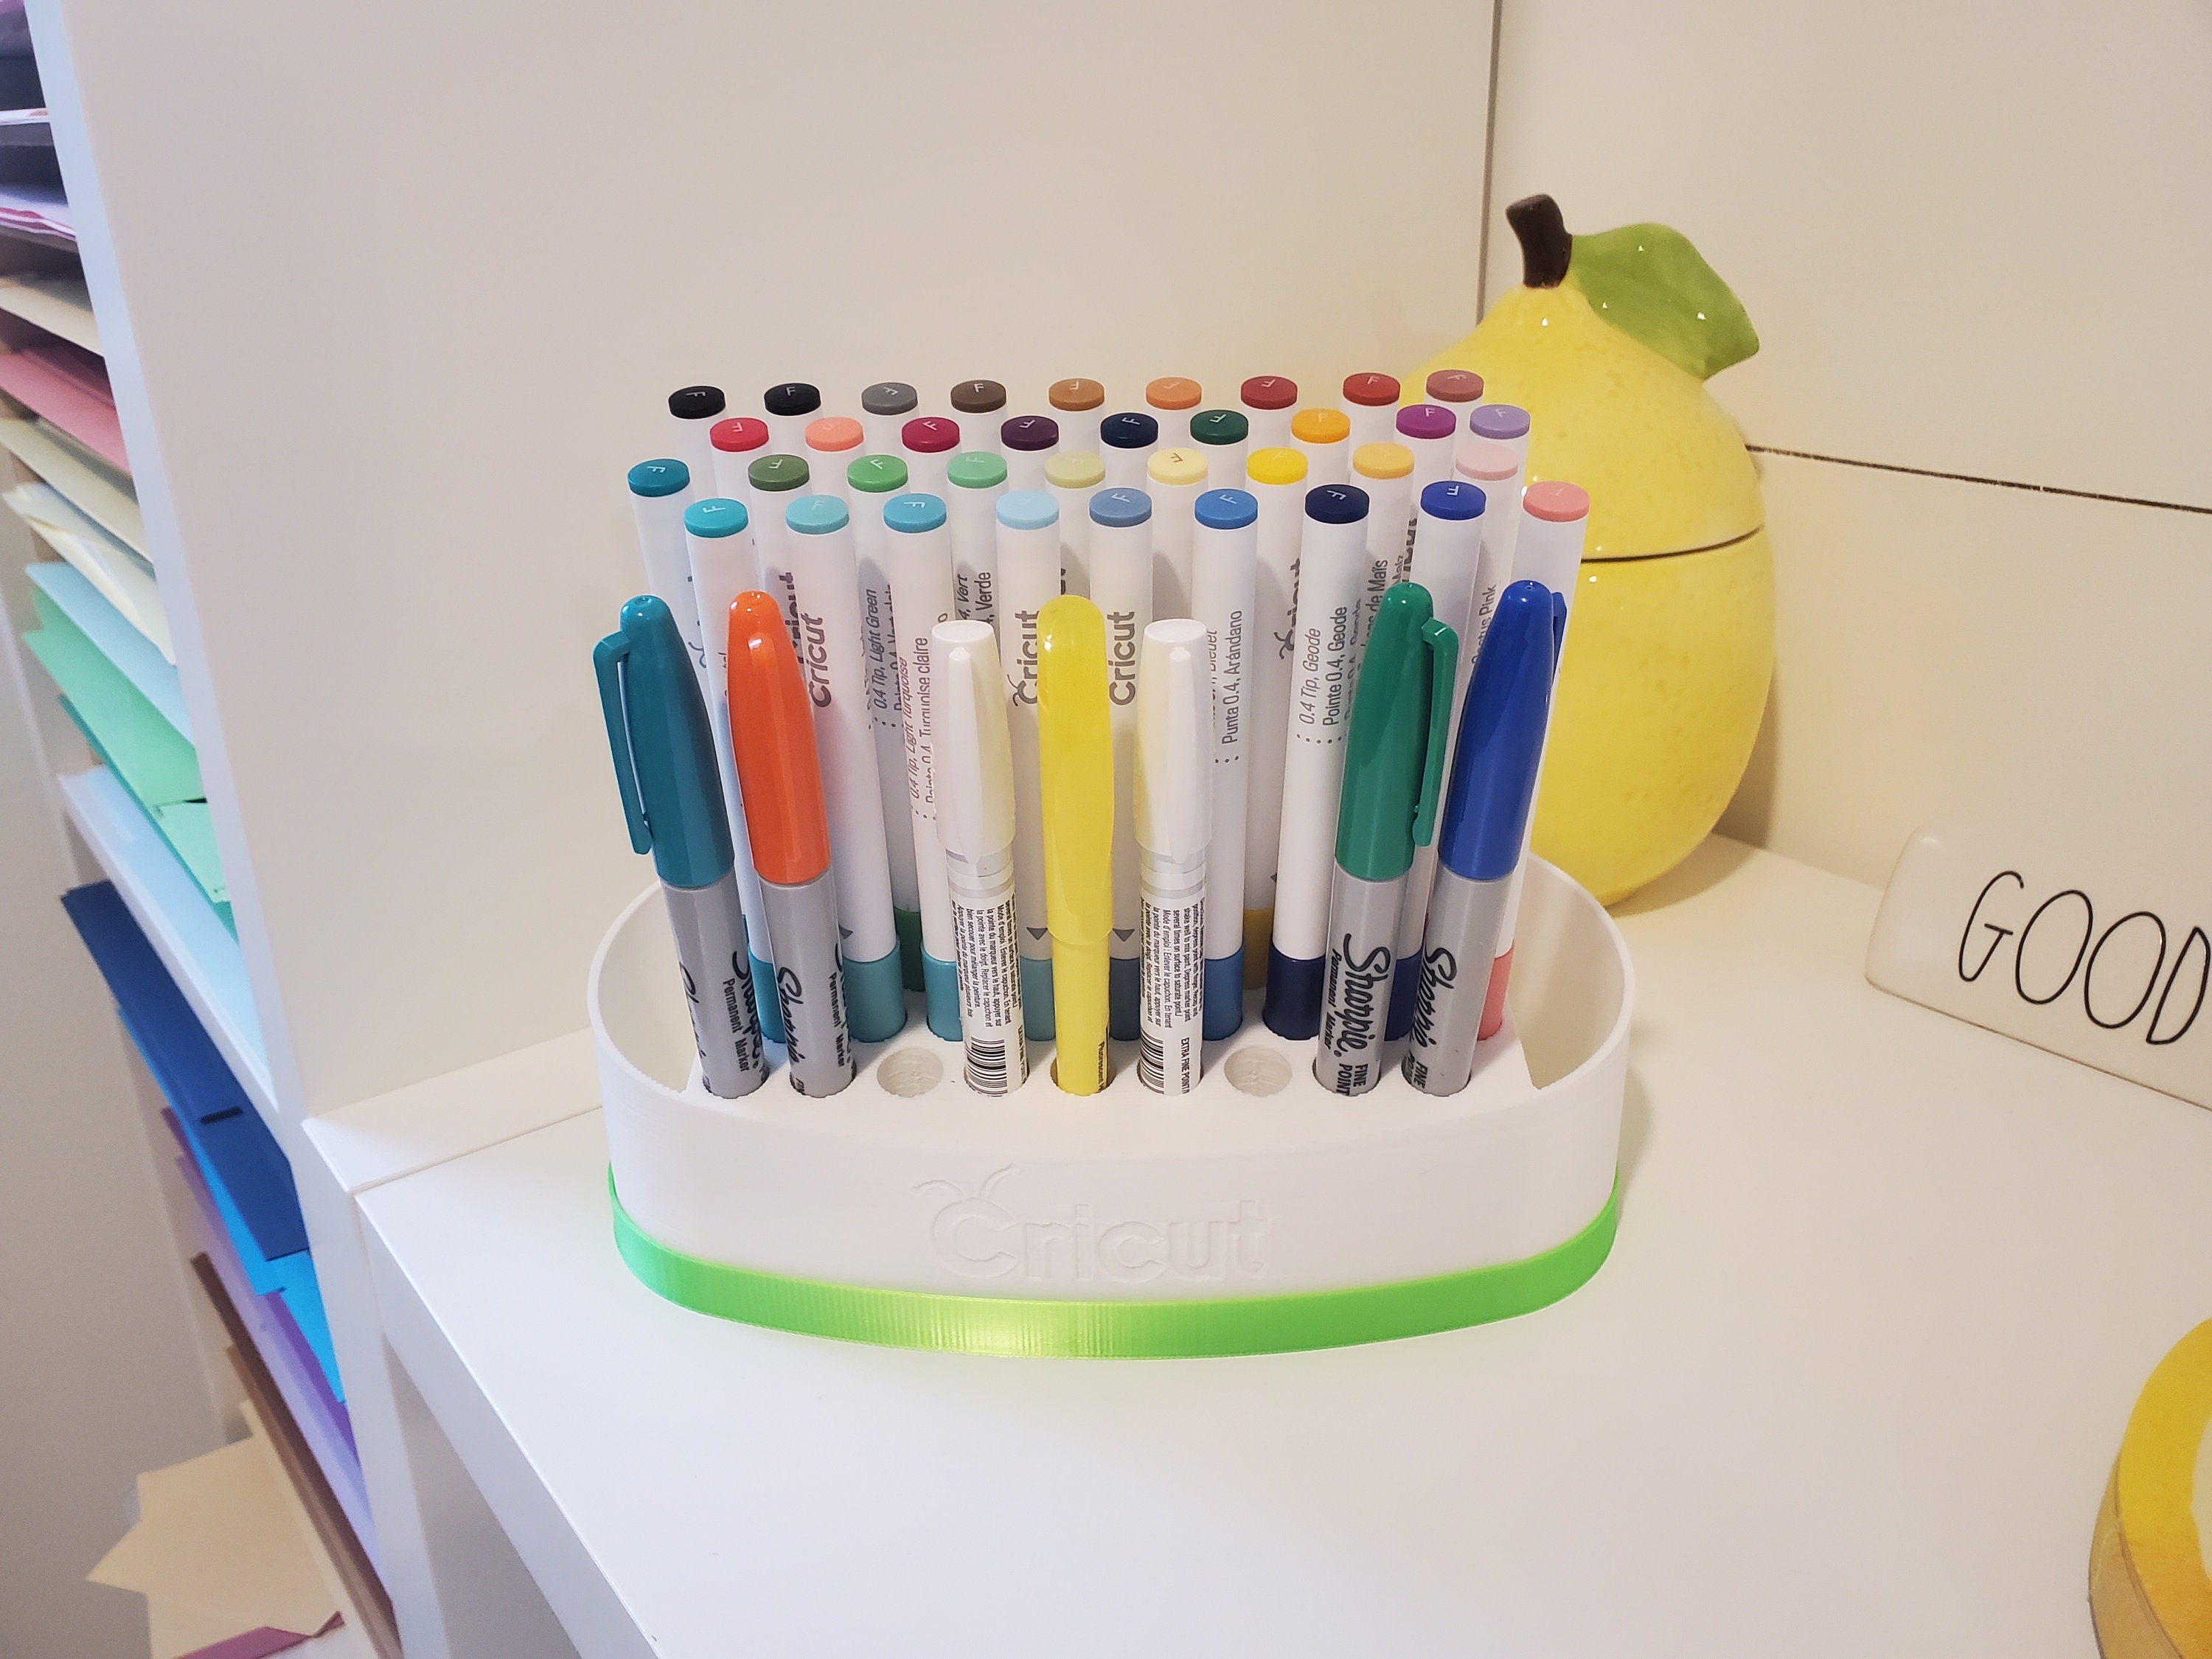 Estos bolígrafos imprimen en 3D!